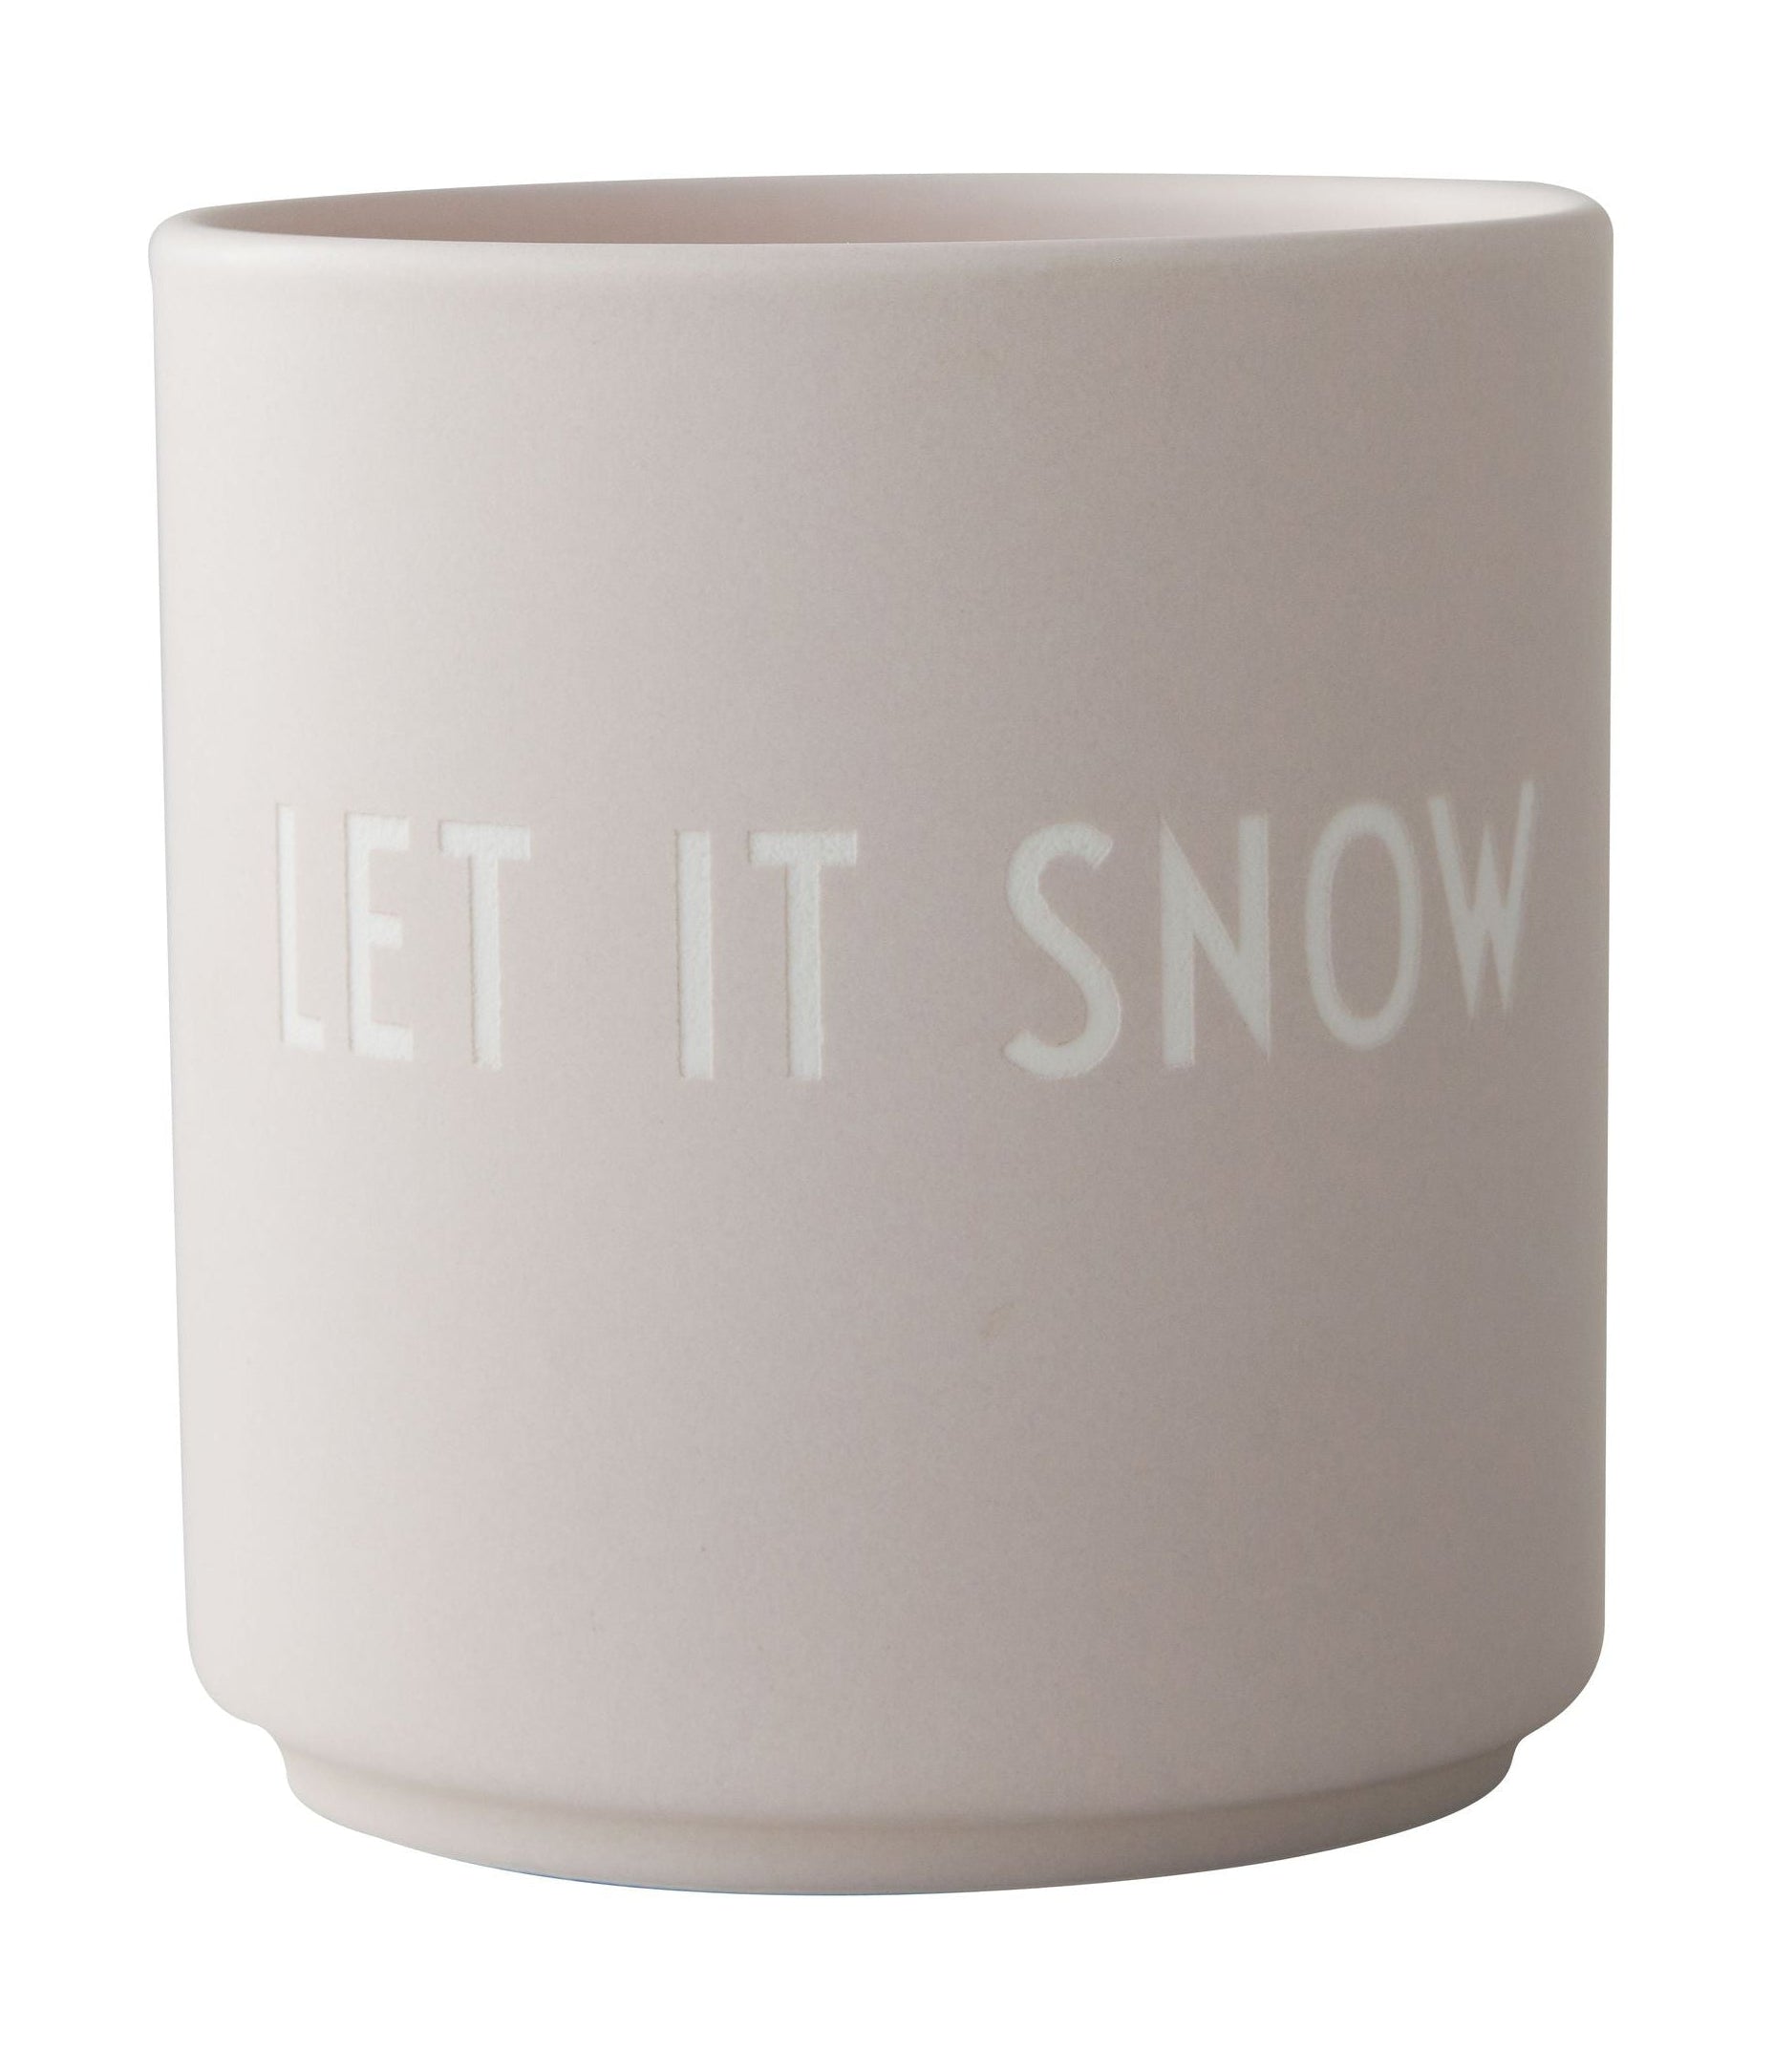 La tazza preferita della lettera di design Let It Snow, Pastel Beige